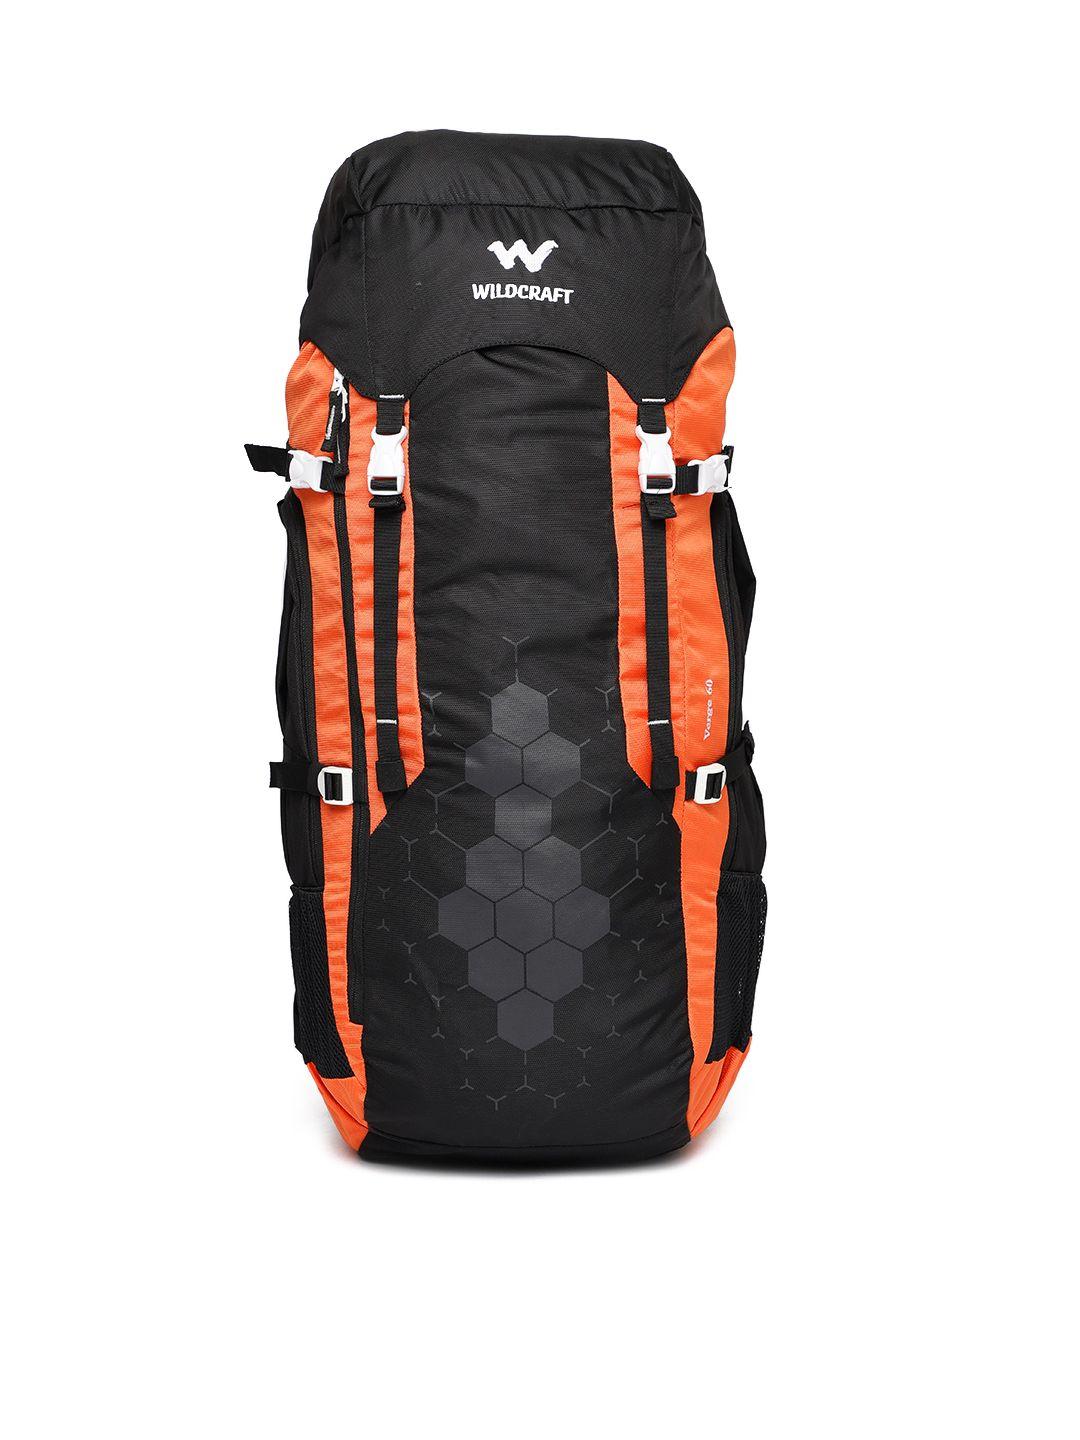 wildcraft unisex black & orange verge 60 rucksack